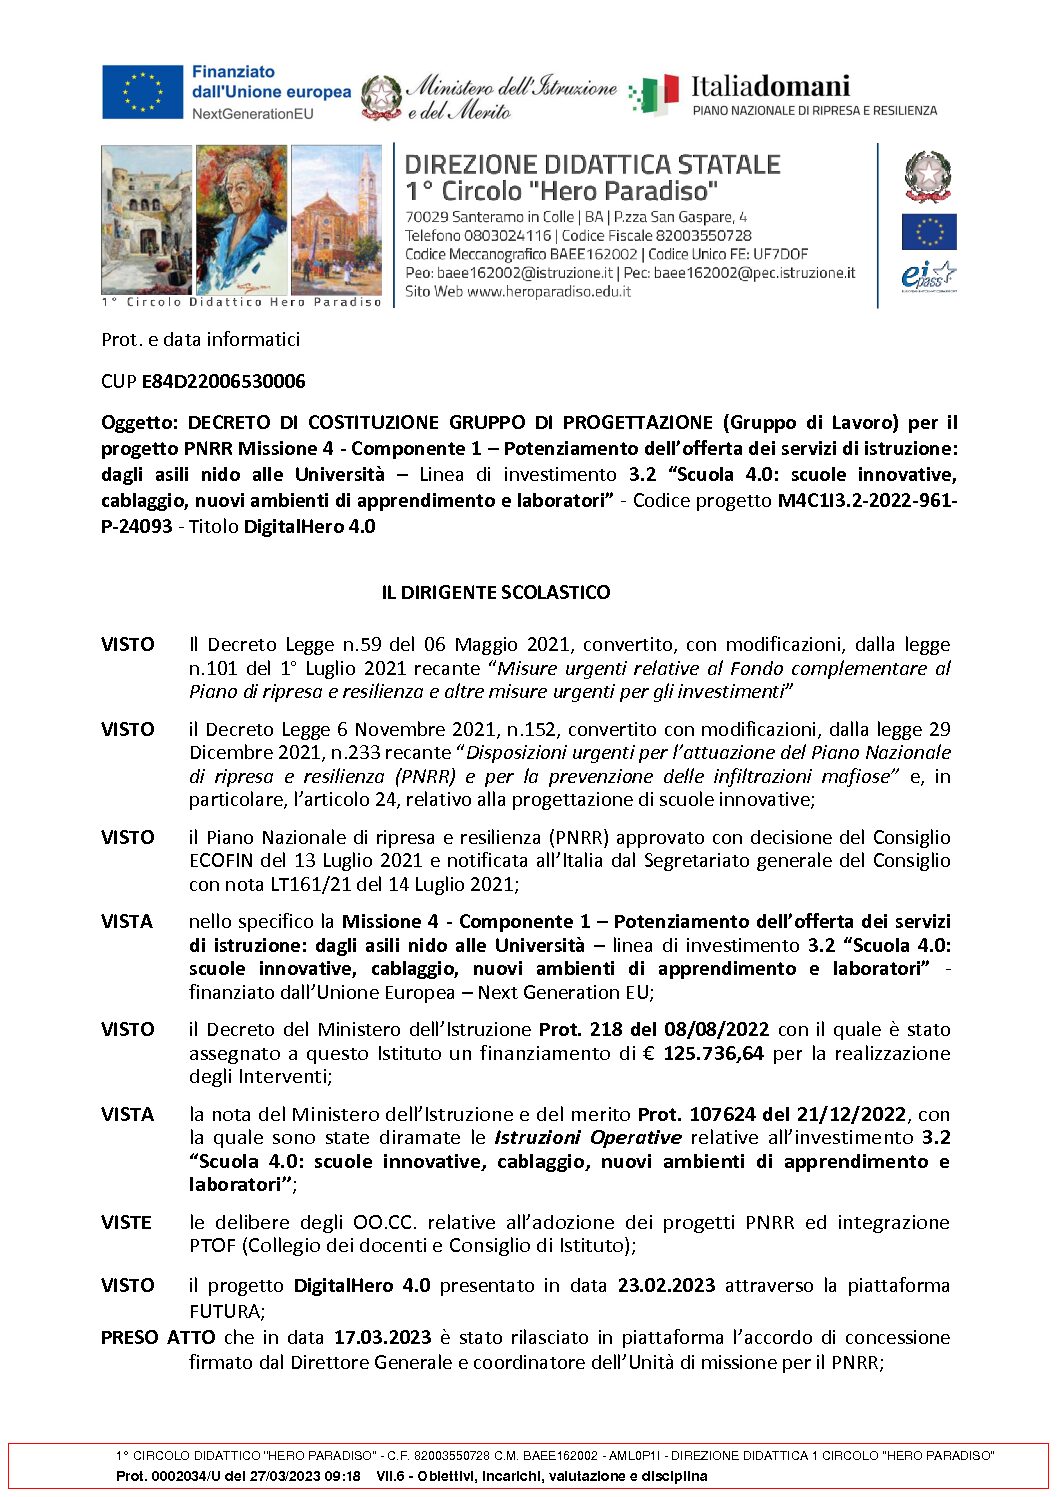 2._Decreto_di_costituzione_Gruppo_di_Progetto_PNRR.pdf.pades